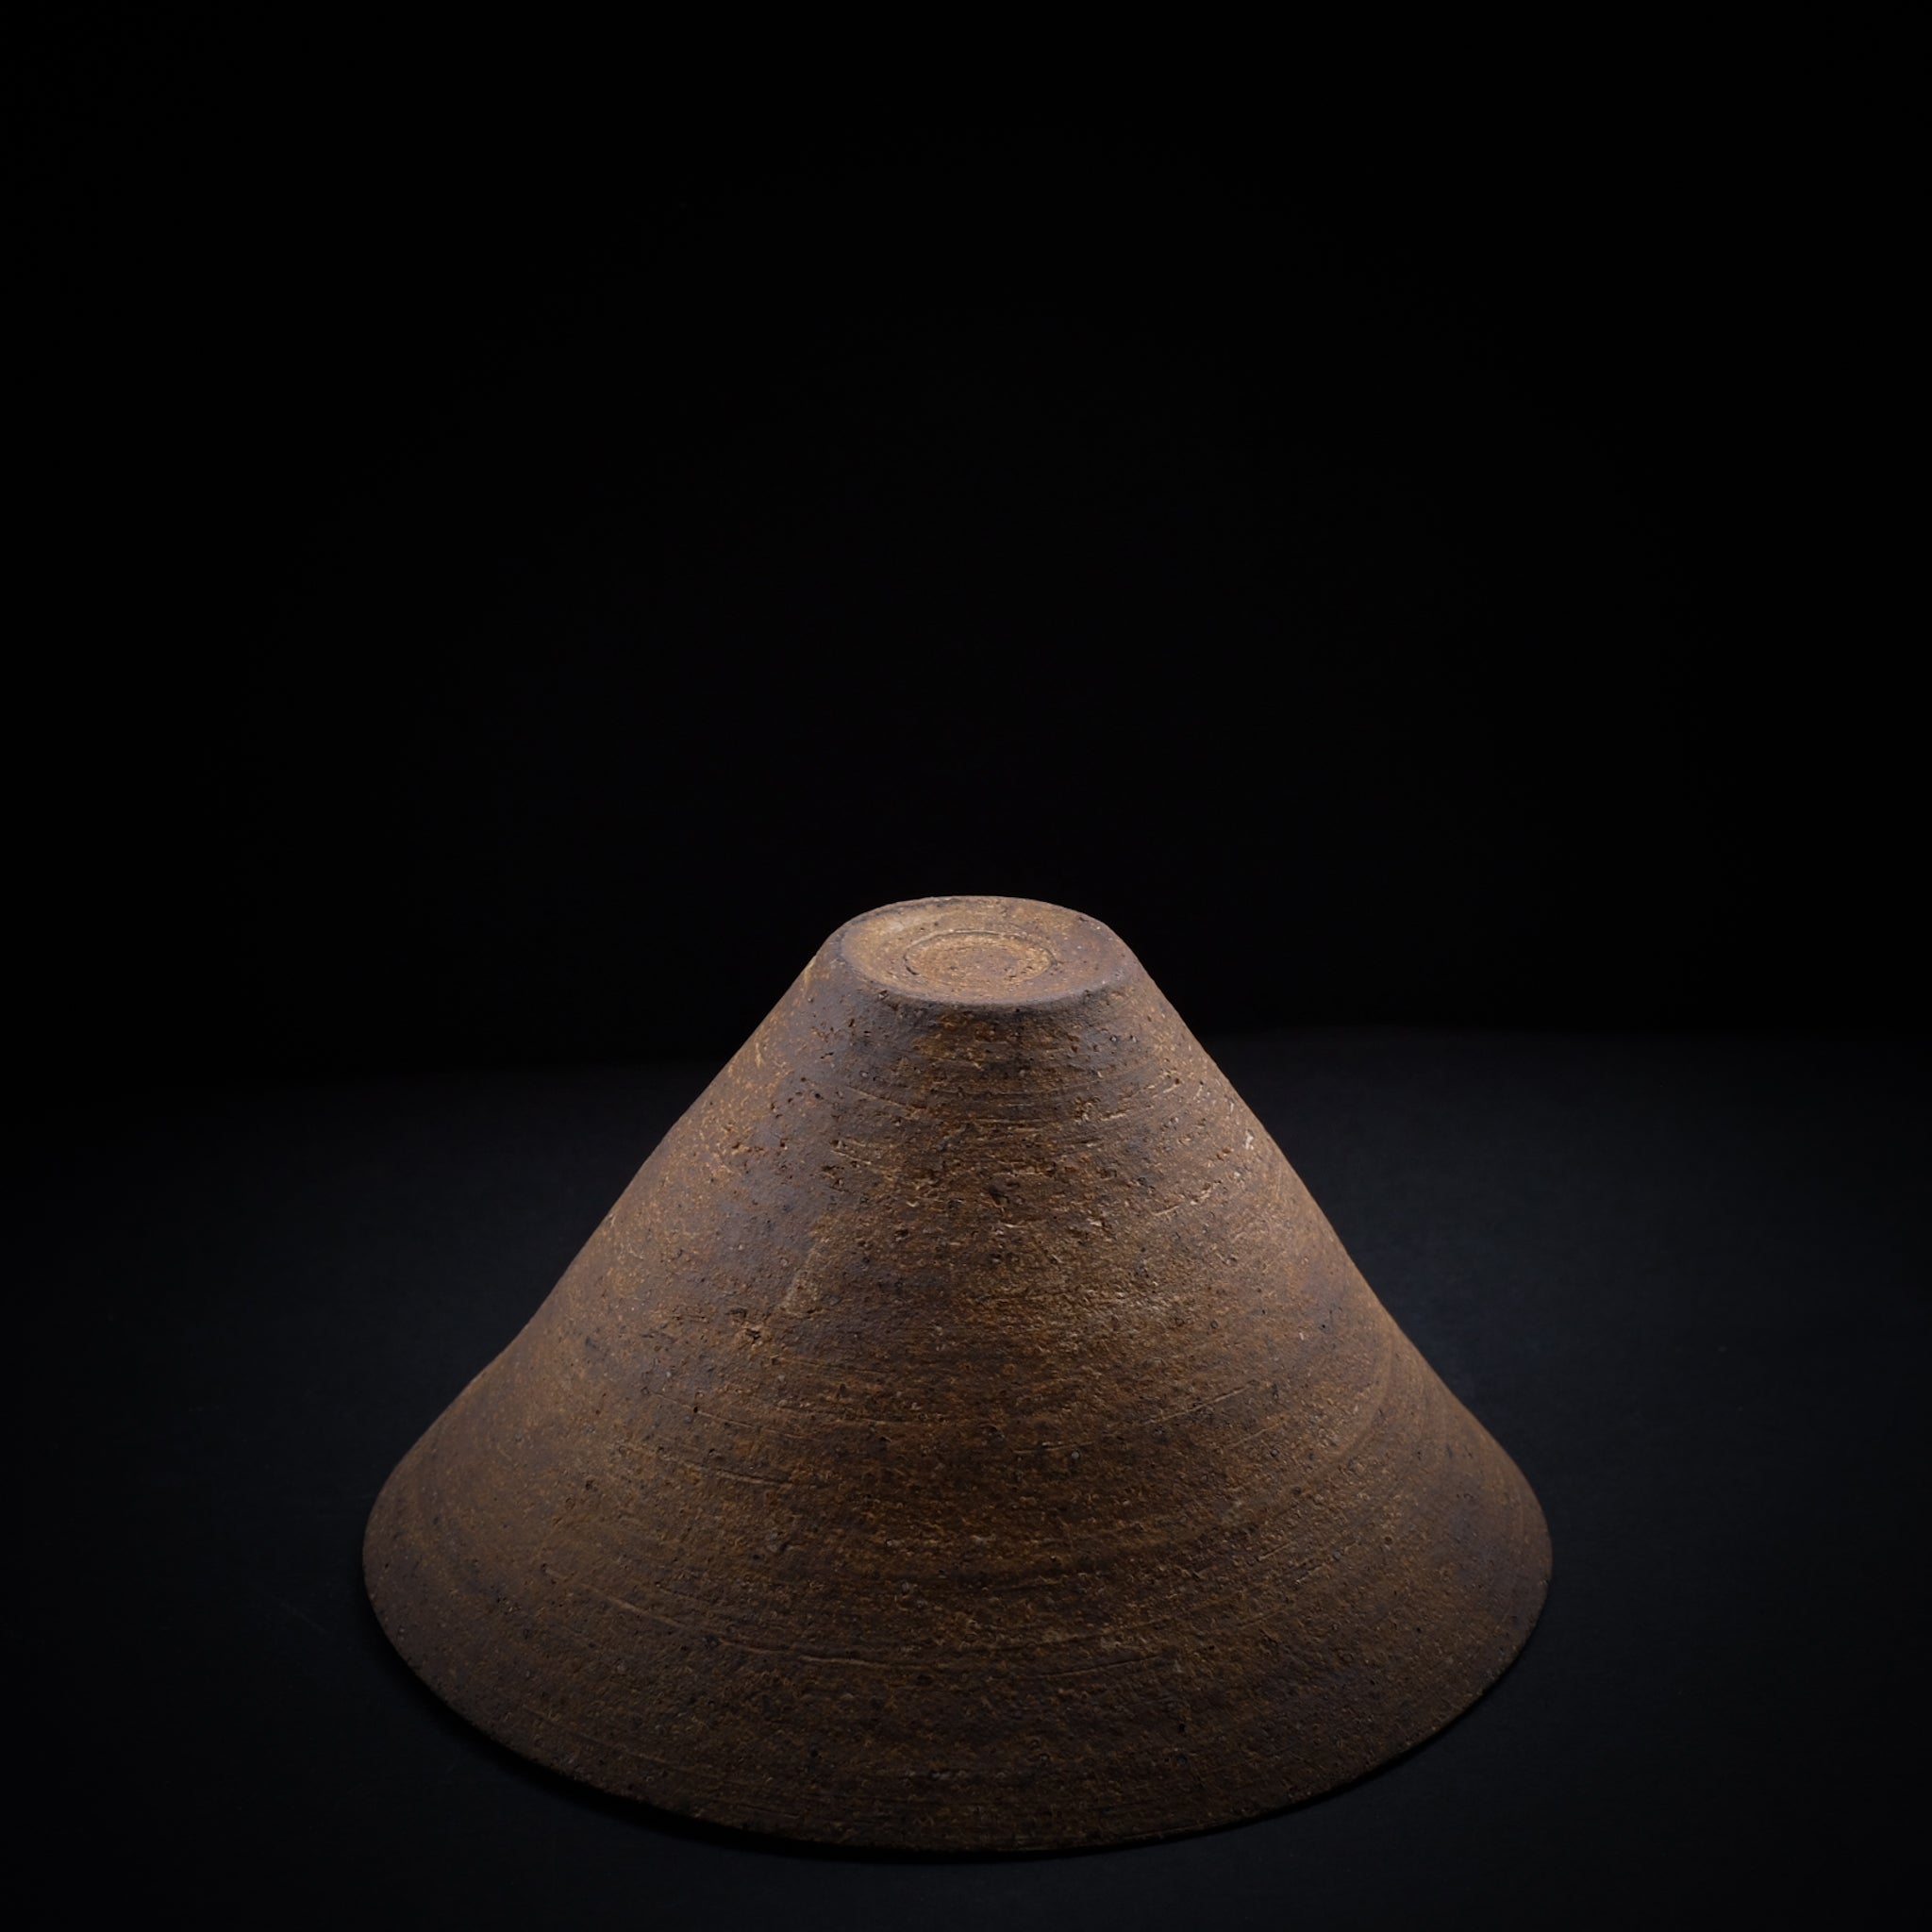 二階堂明弘  やきしめ三角碗 (φ13.5cm)    Akihiro Nikaido  Yakishime bowl (φ13.5cm) AN107